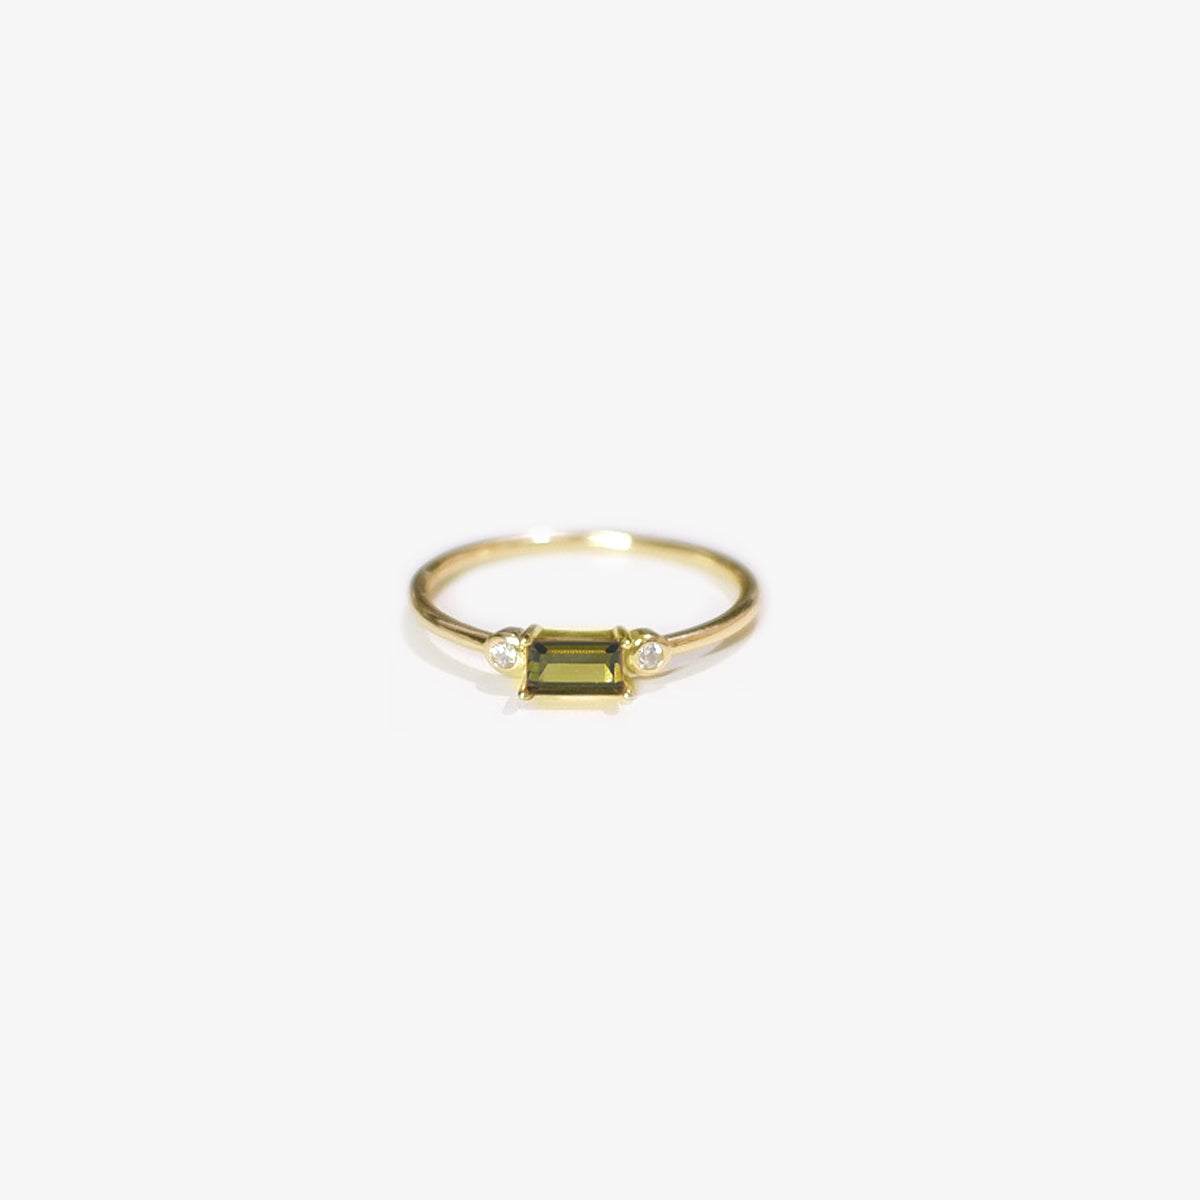 The Elio Baguette Ring